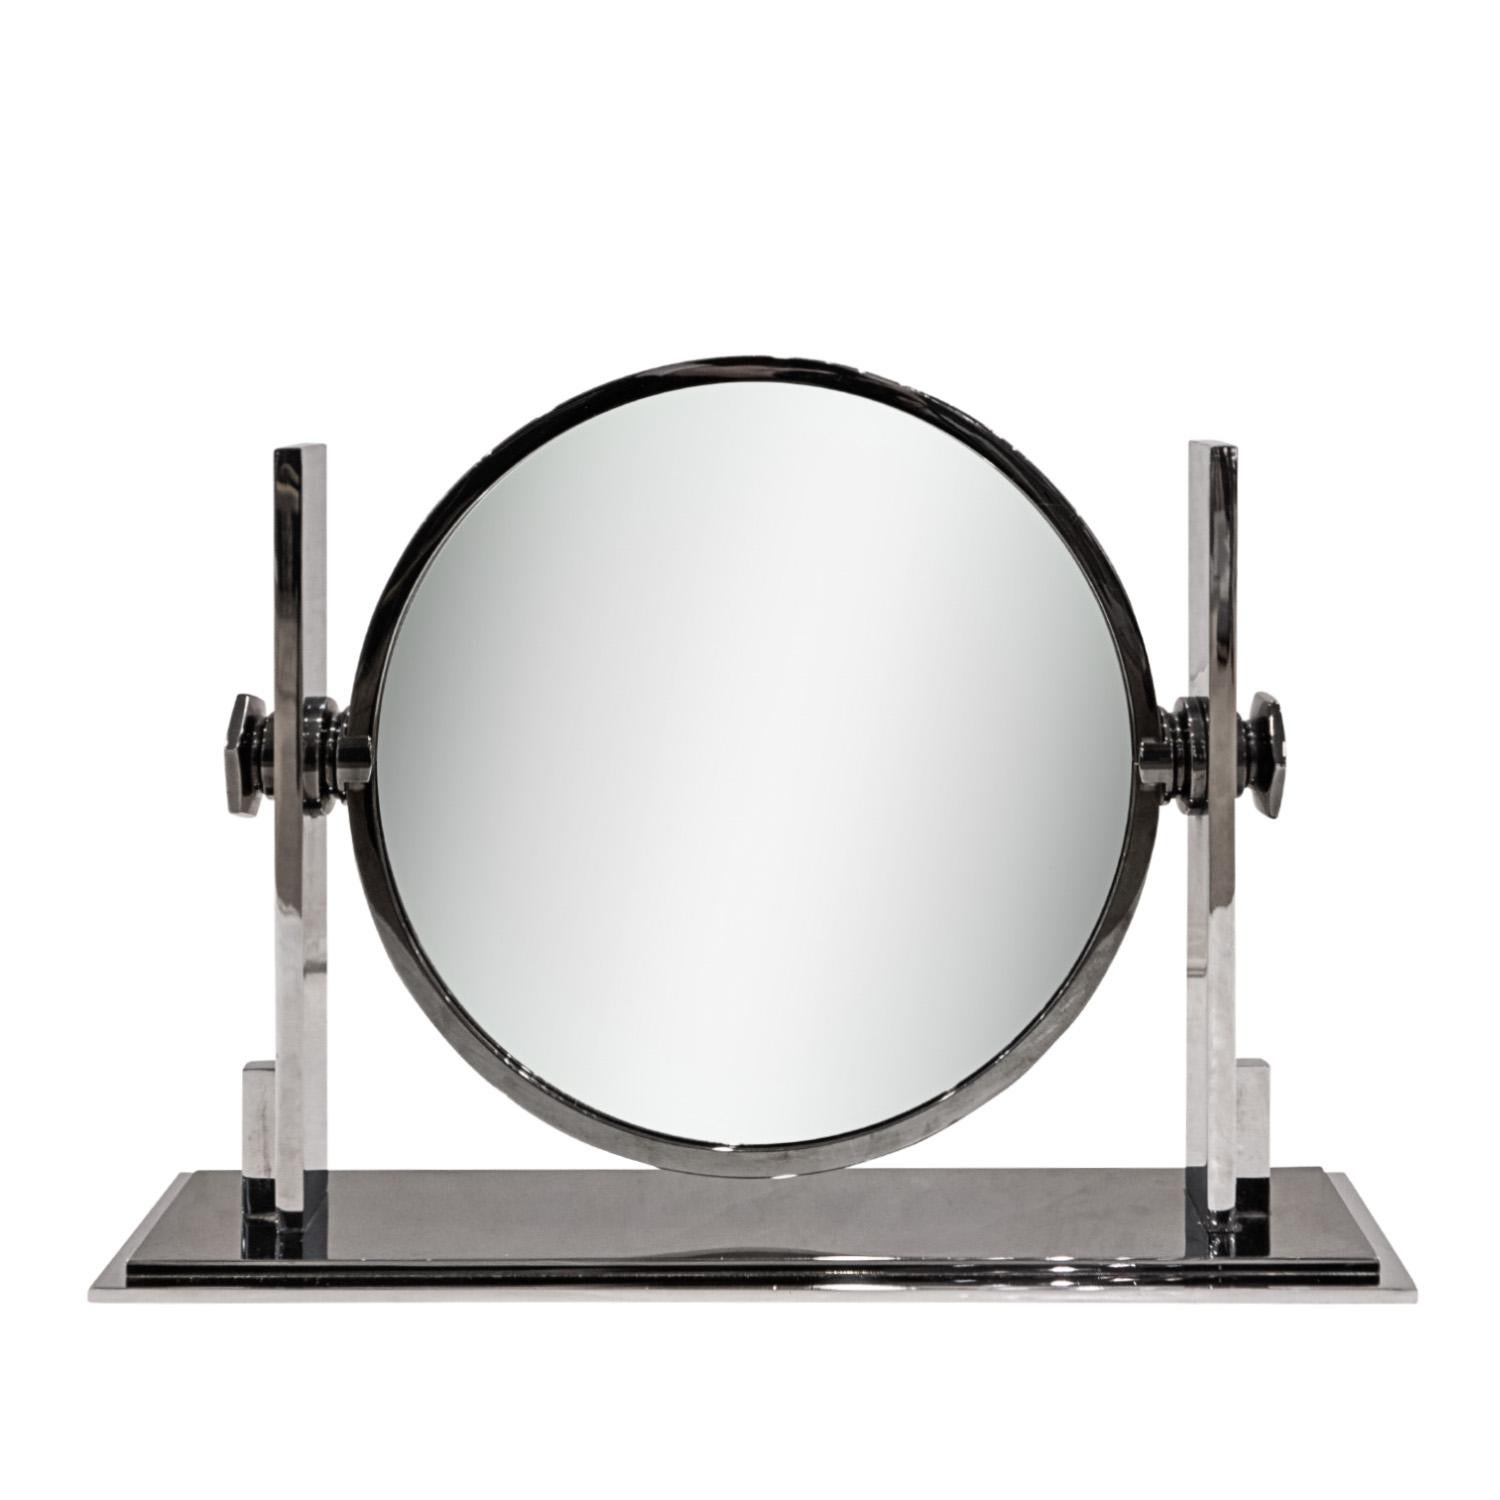 Magnifique miroir de courtoisie double face en bronze et chrome, avec loupe d'un côté et miroir normal de l'autre, par Karl Springer, américain, années 1980.  Il est rare de voir ce miroir dans ces métaux.  Il était généralement réalisé en laiton et